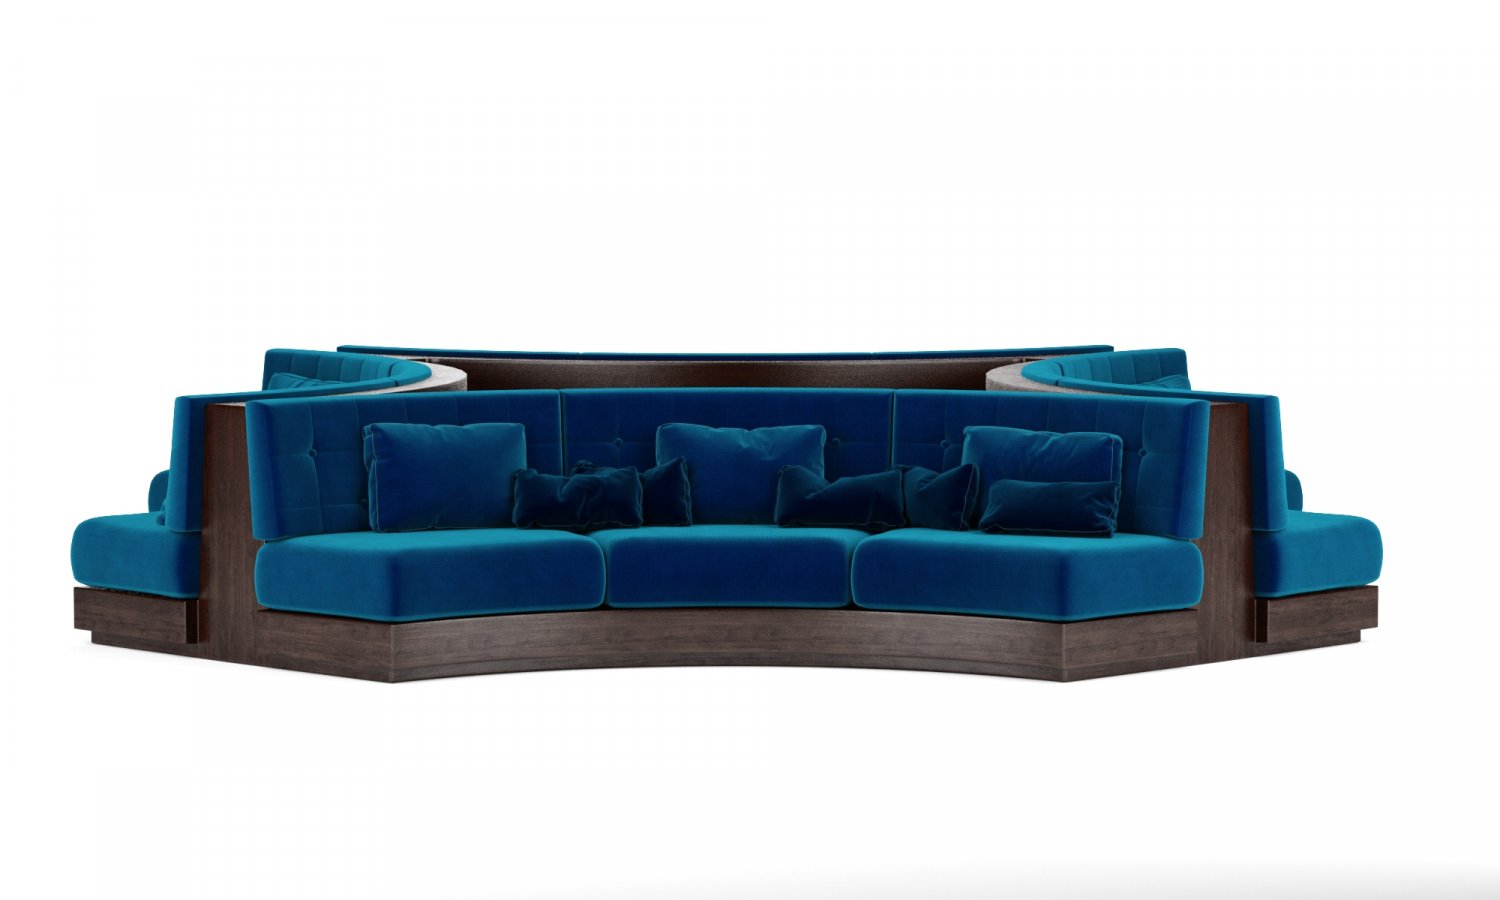 Round Booth Restaurante Seating 3D model - Baixar Mobiliário no